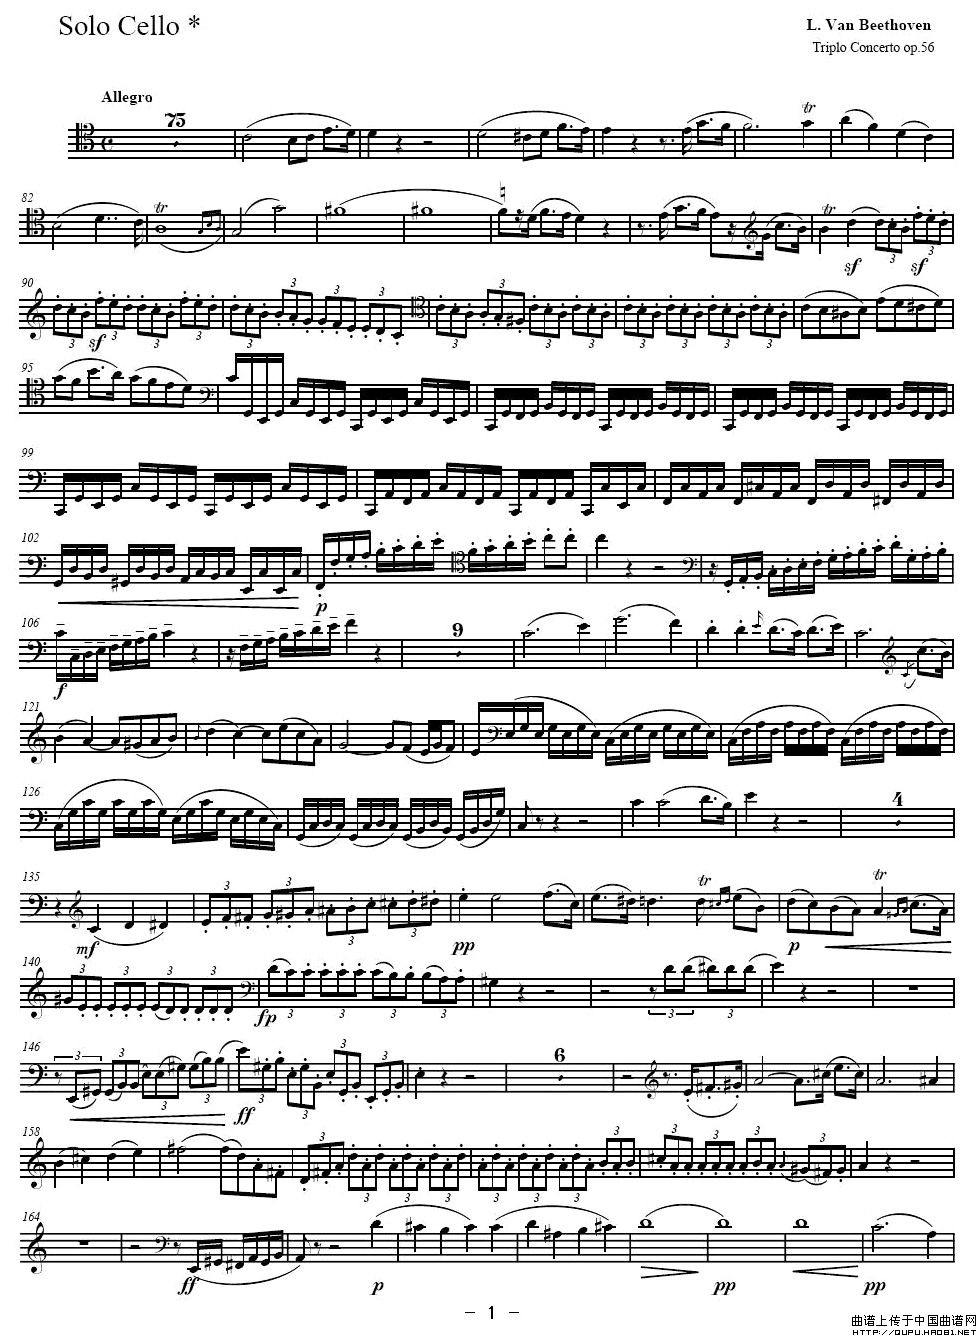 贝多芬  C大调三重协奏曲 第一乐章 作品56（大提